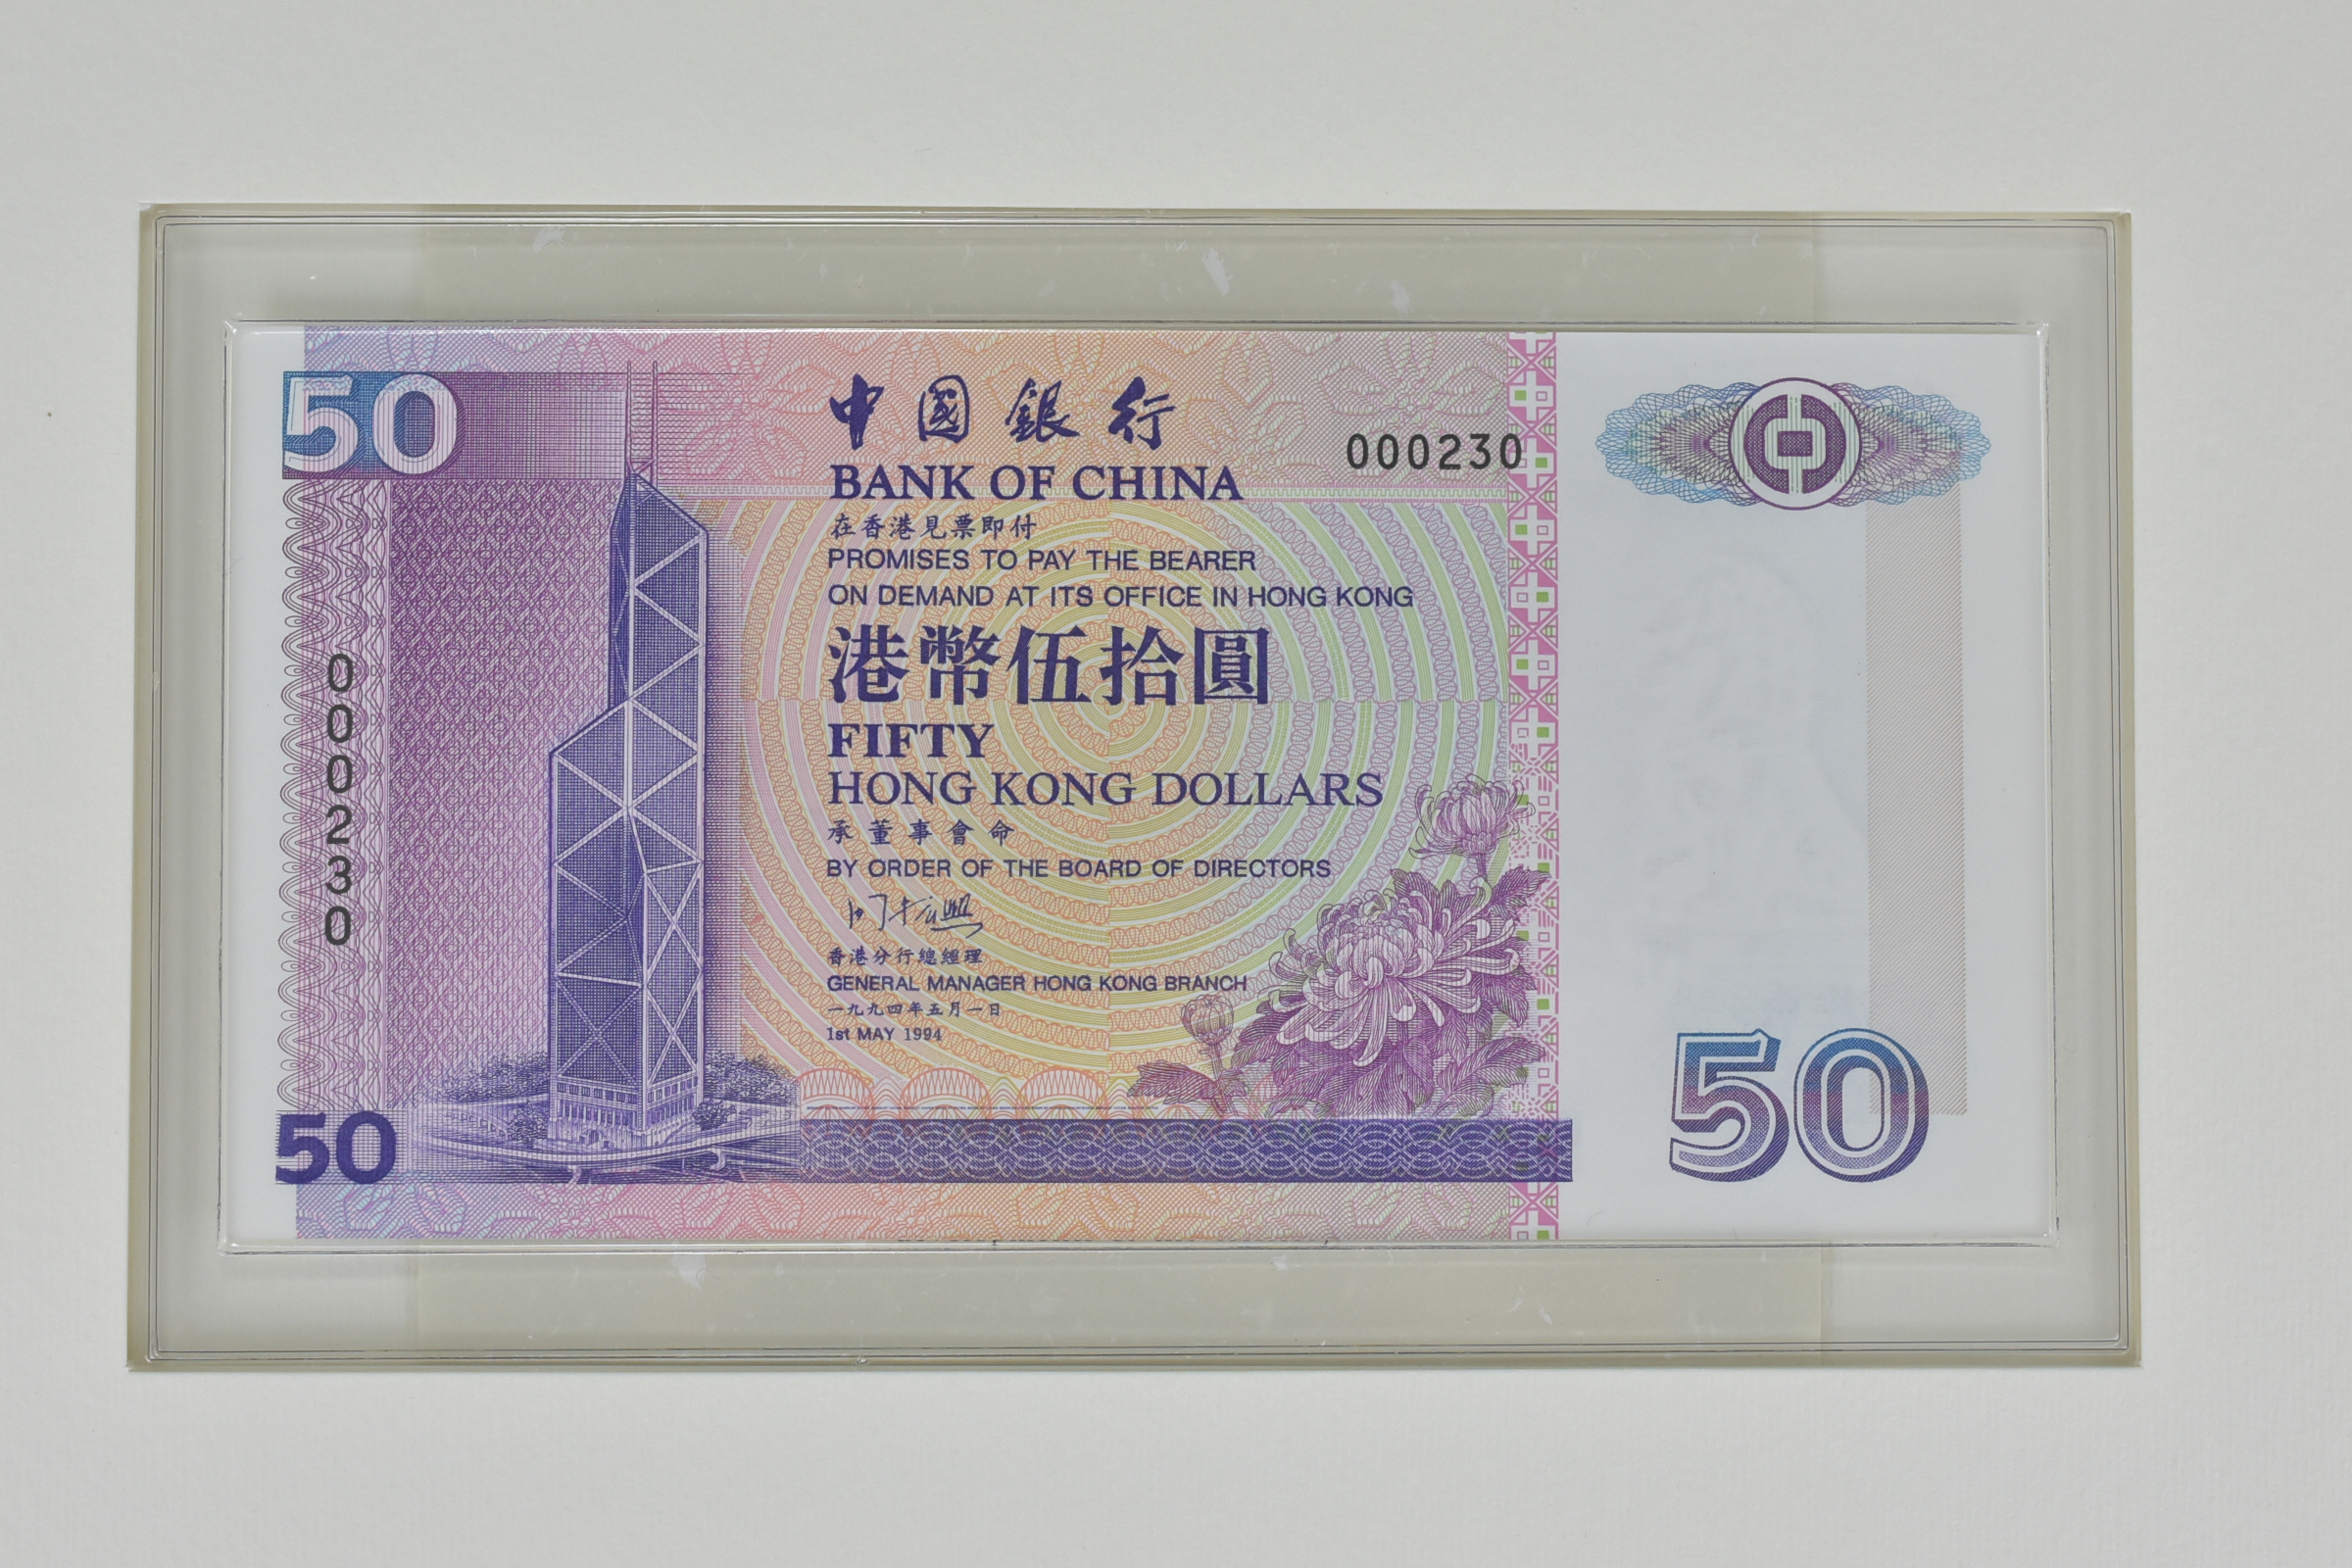 Bank of China Hong Kong Dollar Notes Commemorative set - Image 8 of 12